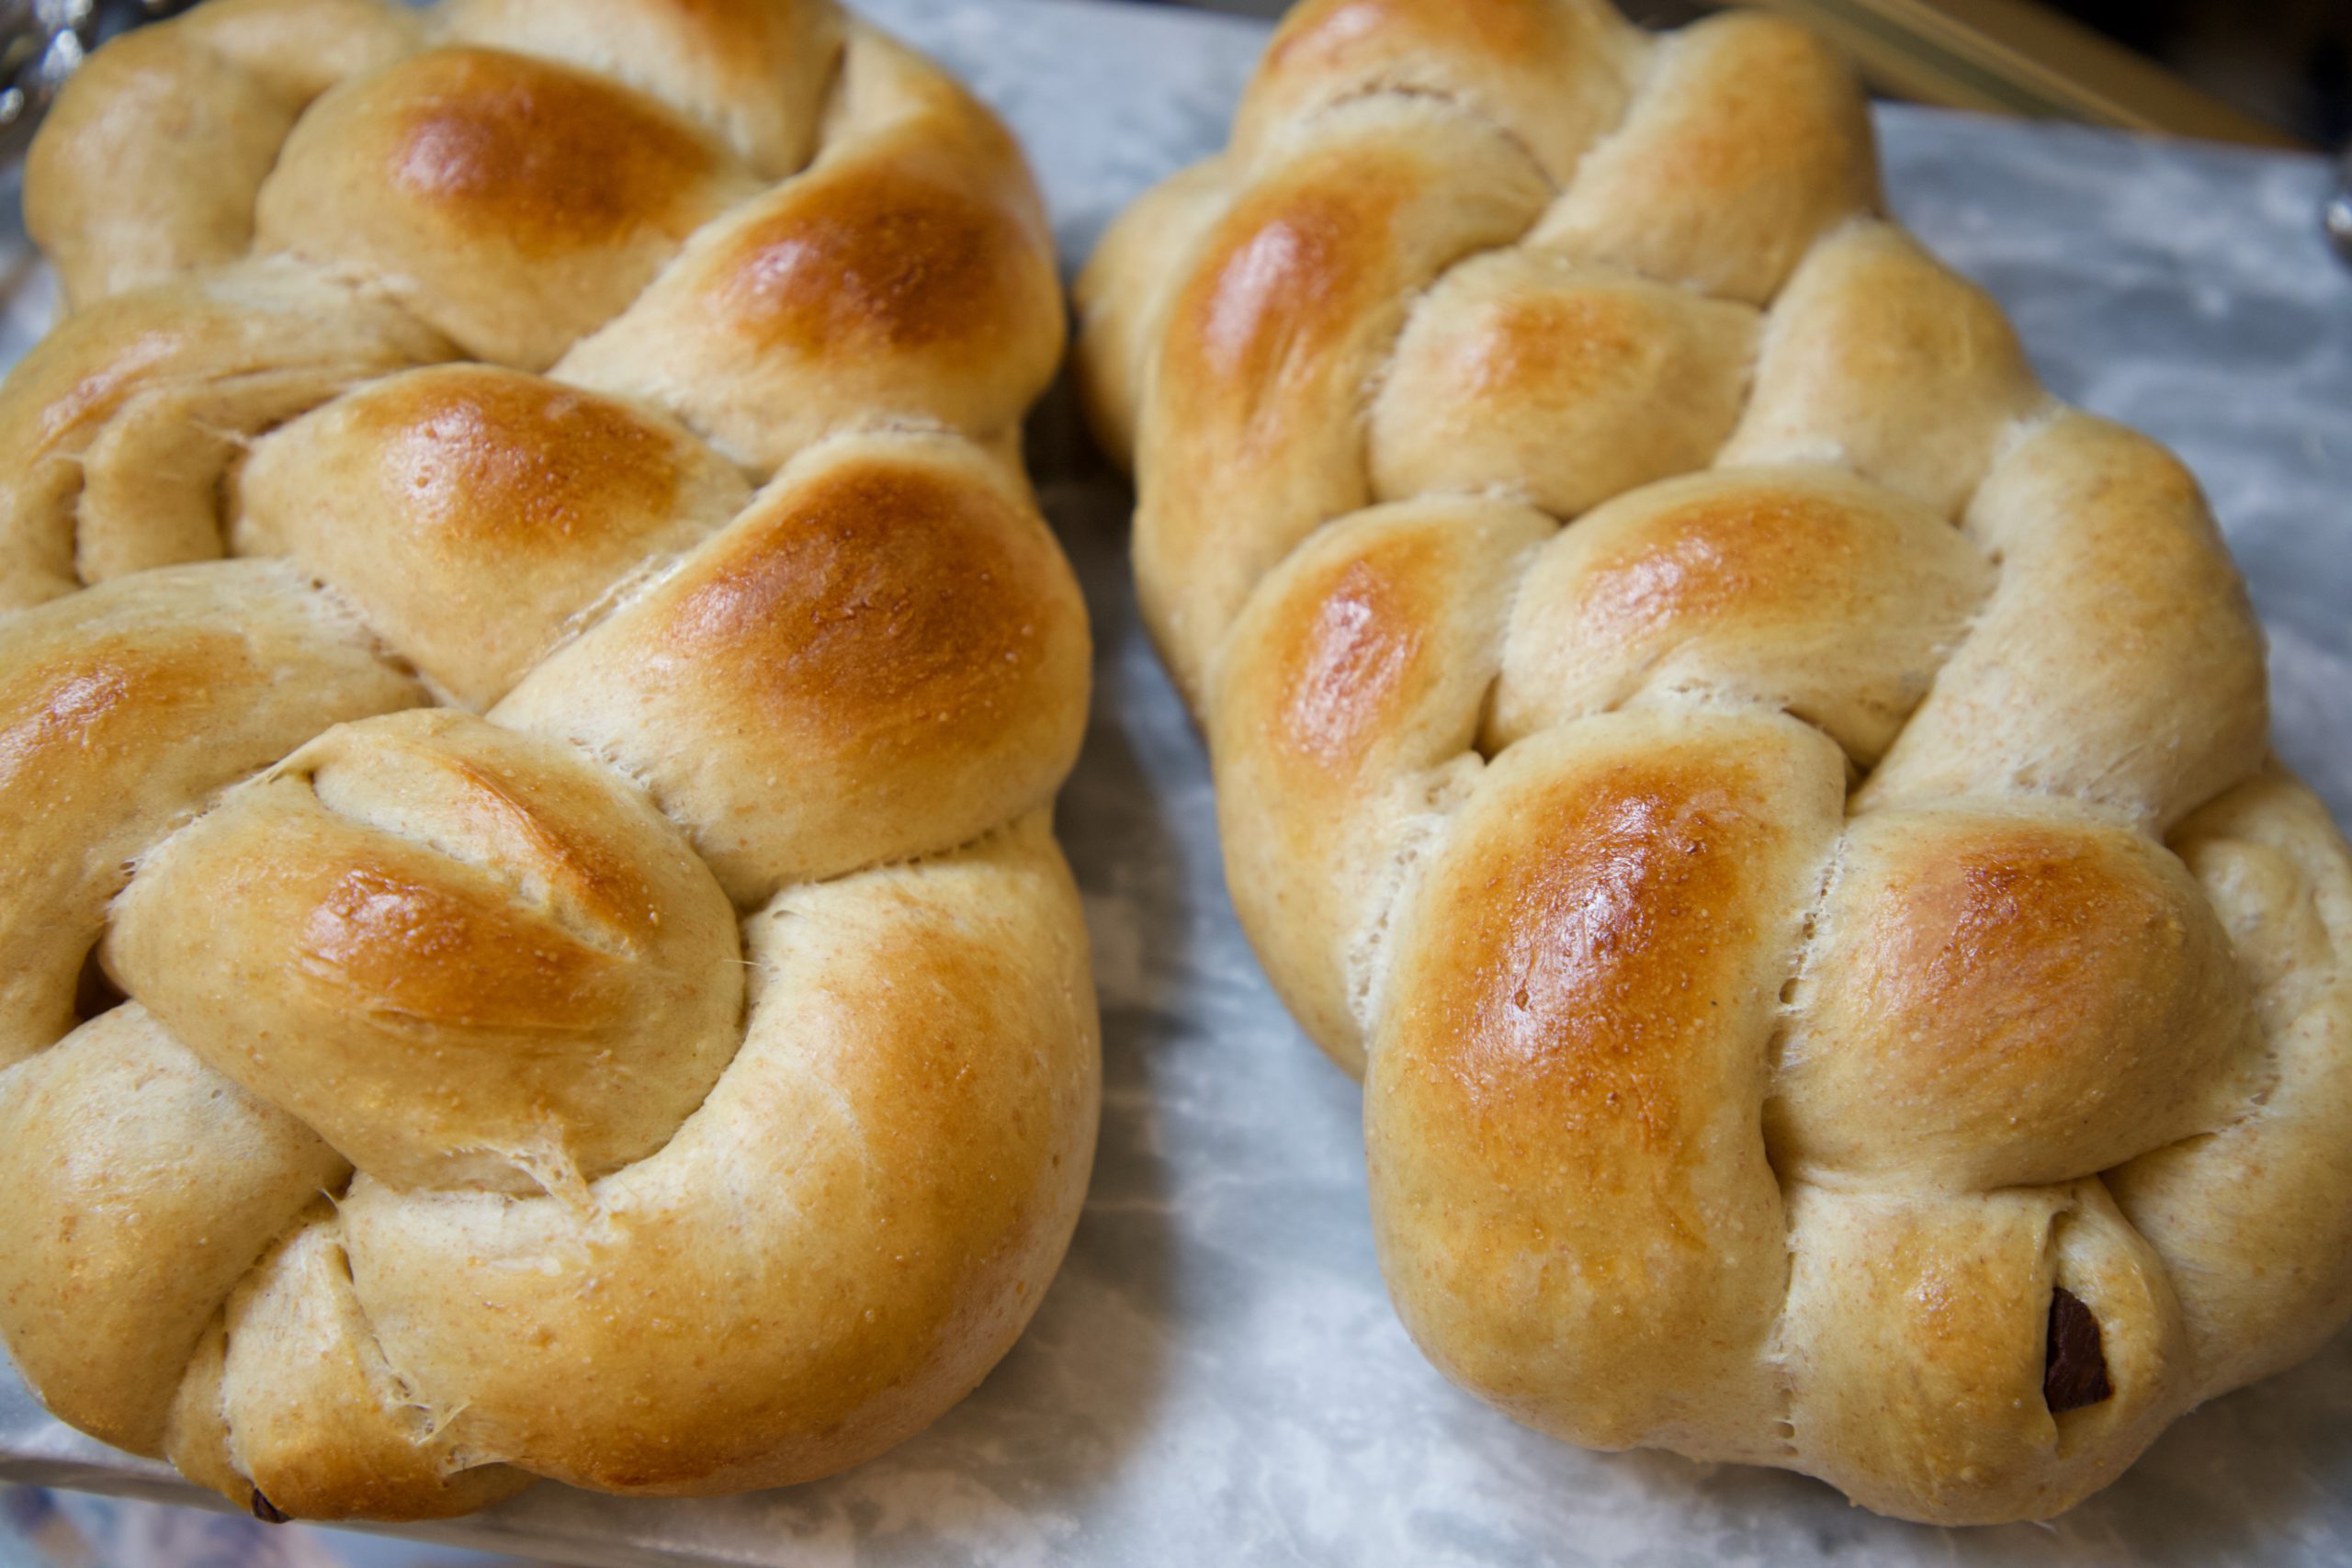 Sourdough Challah Bread, Receta